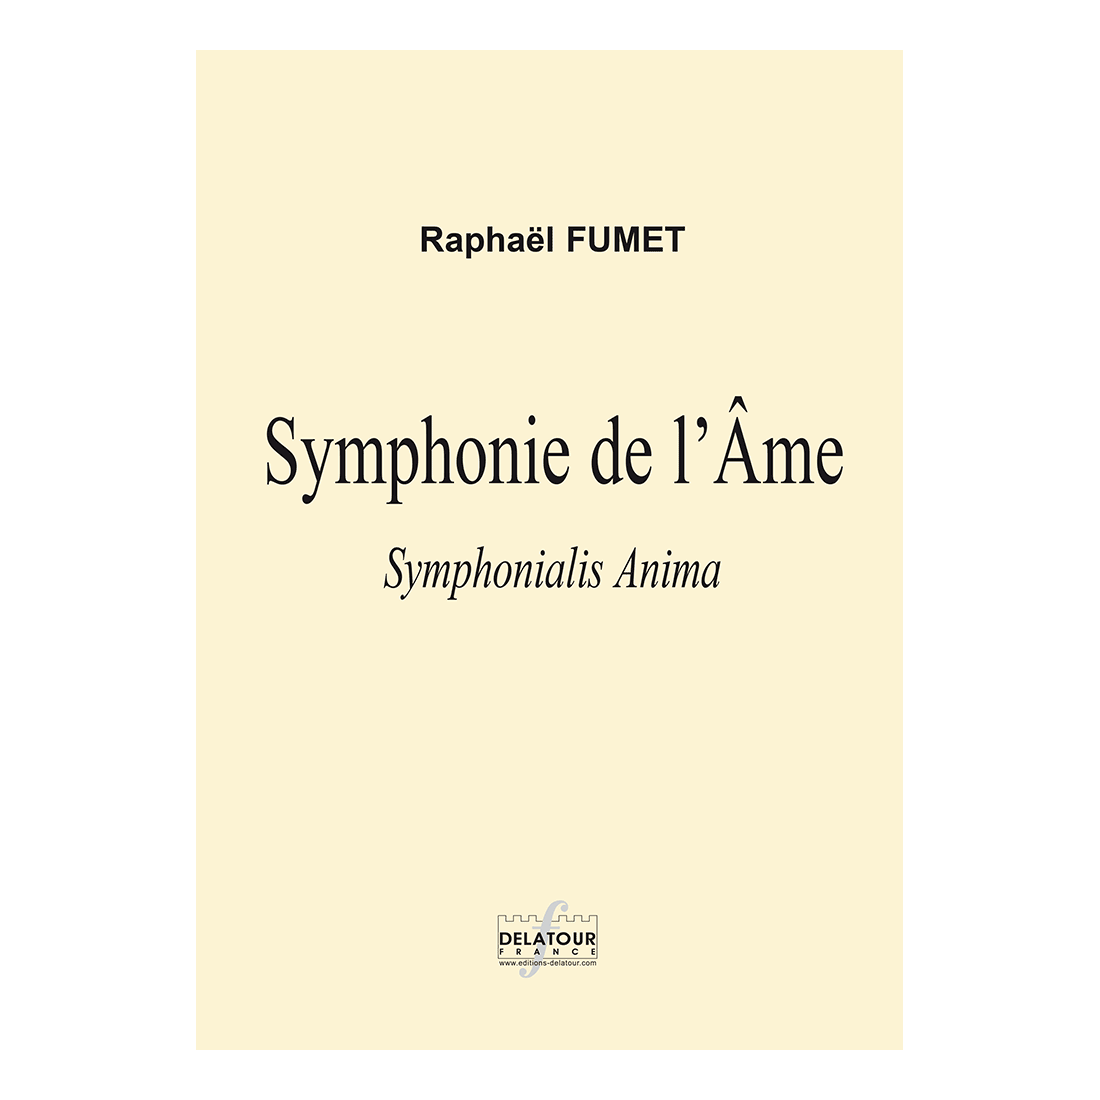 Symphonie de l'âme für Orchester (FULL SCORE)